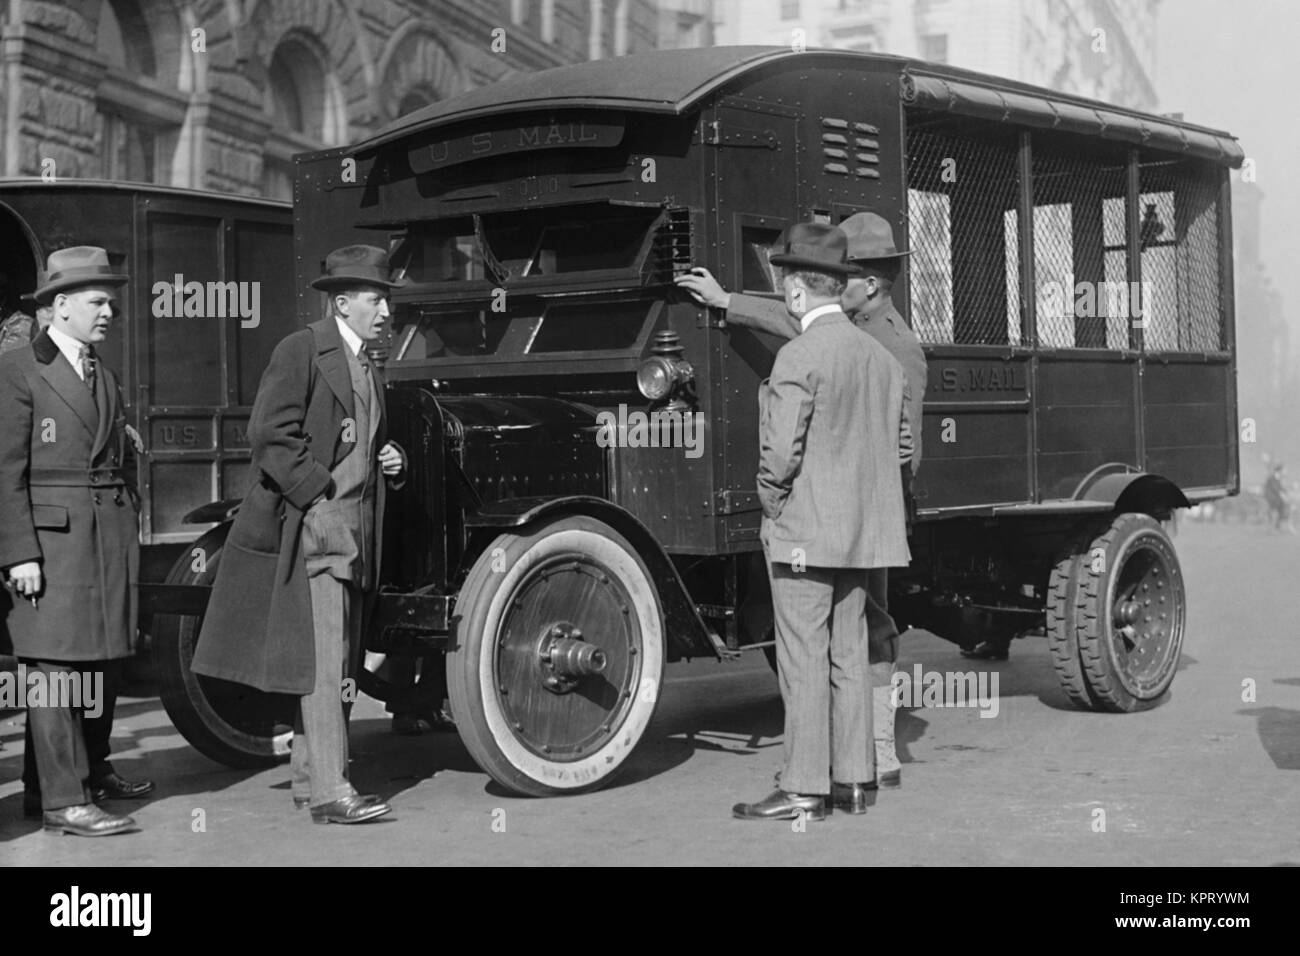 La livraison de nouveaux Mail Truck inspectés par quatre hommes Banque D'Images